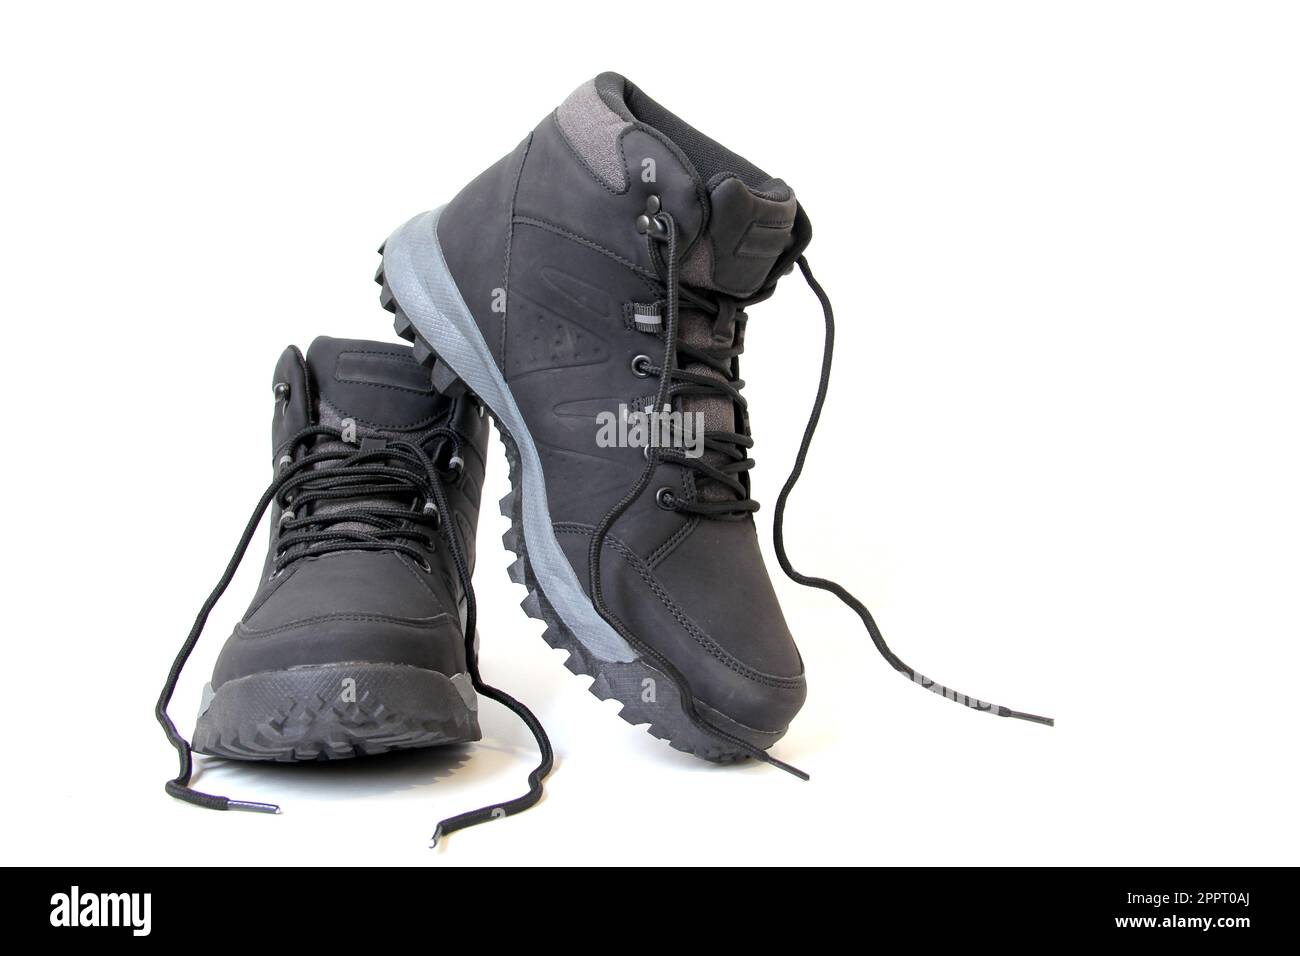 Chaussures de randonnée pour hommes ou femmes qui veulent faire des promenades en montagne avec une semelle antidérapante ferme qui donne la stabilité et la liberté de mouvement pour l'aventure Banque D'Images